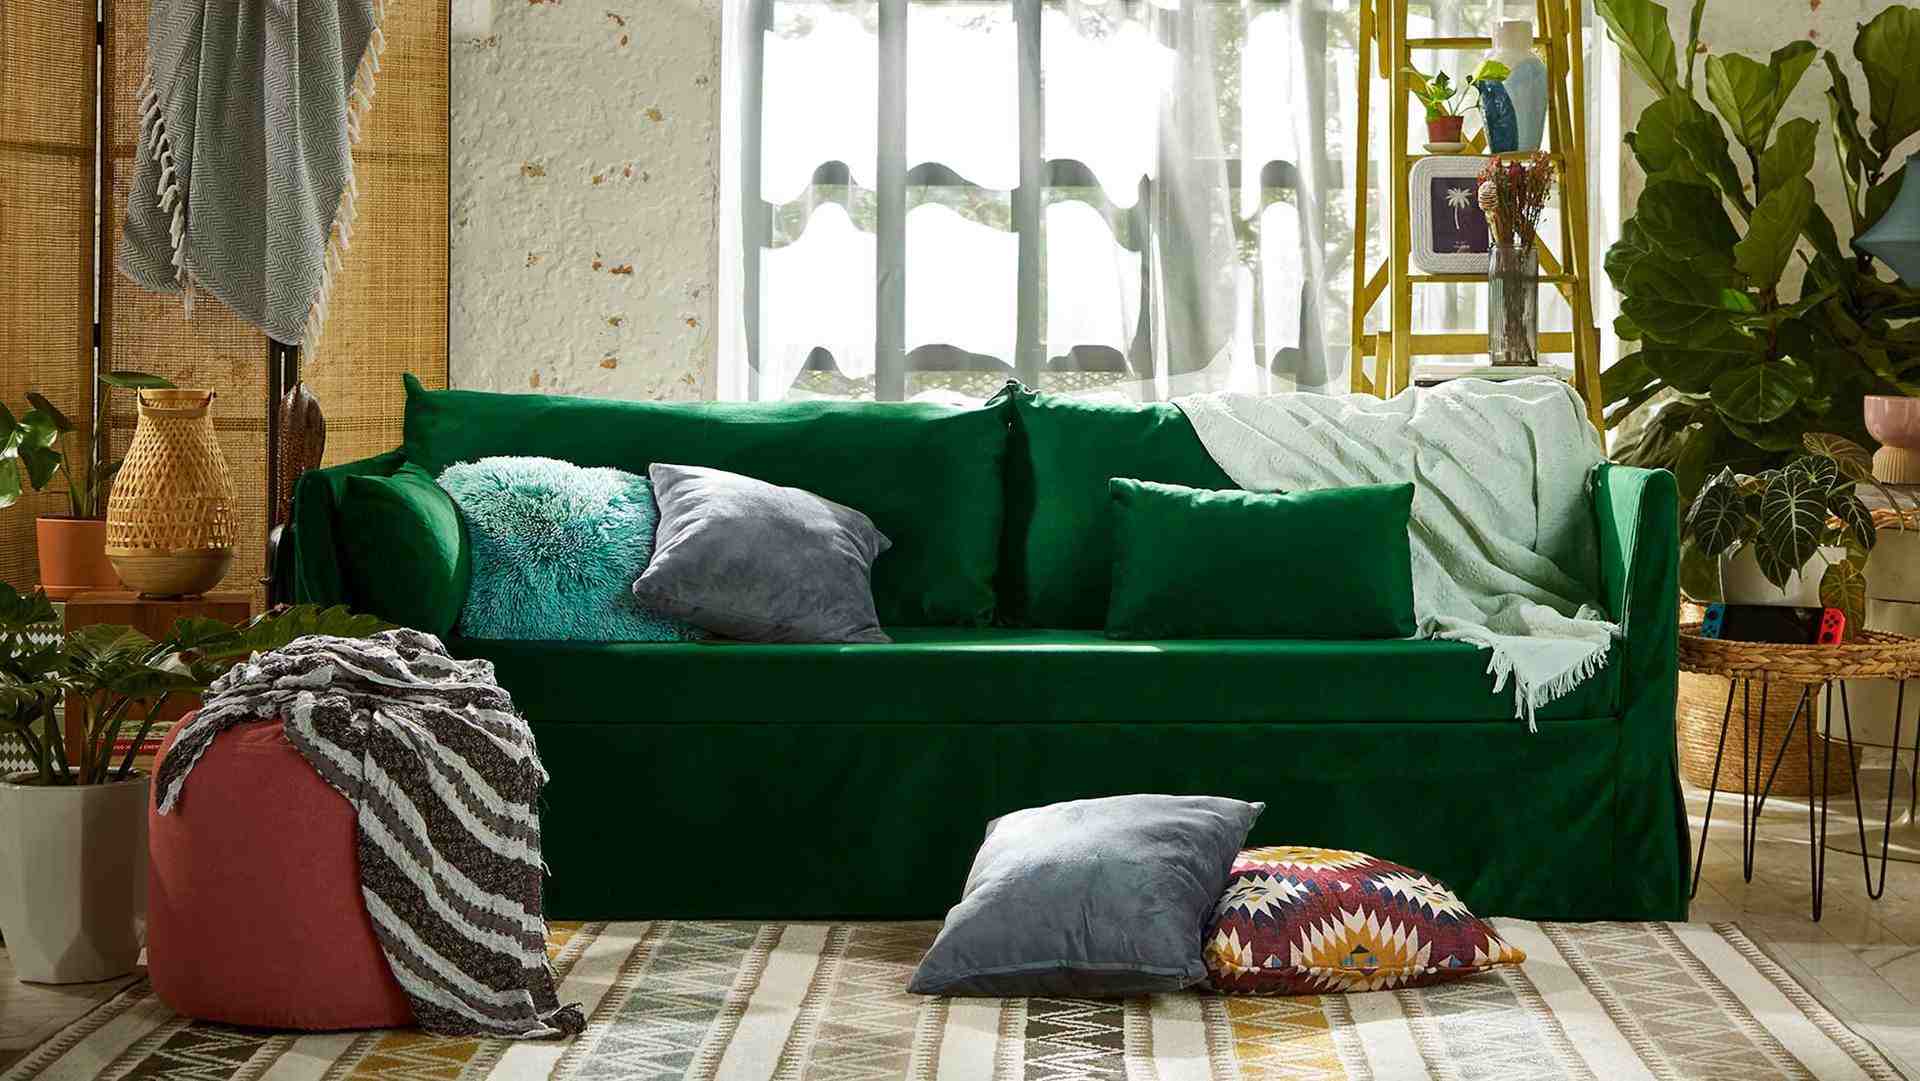 Emerald classic velvet Sandbacken in a lush green living room